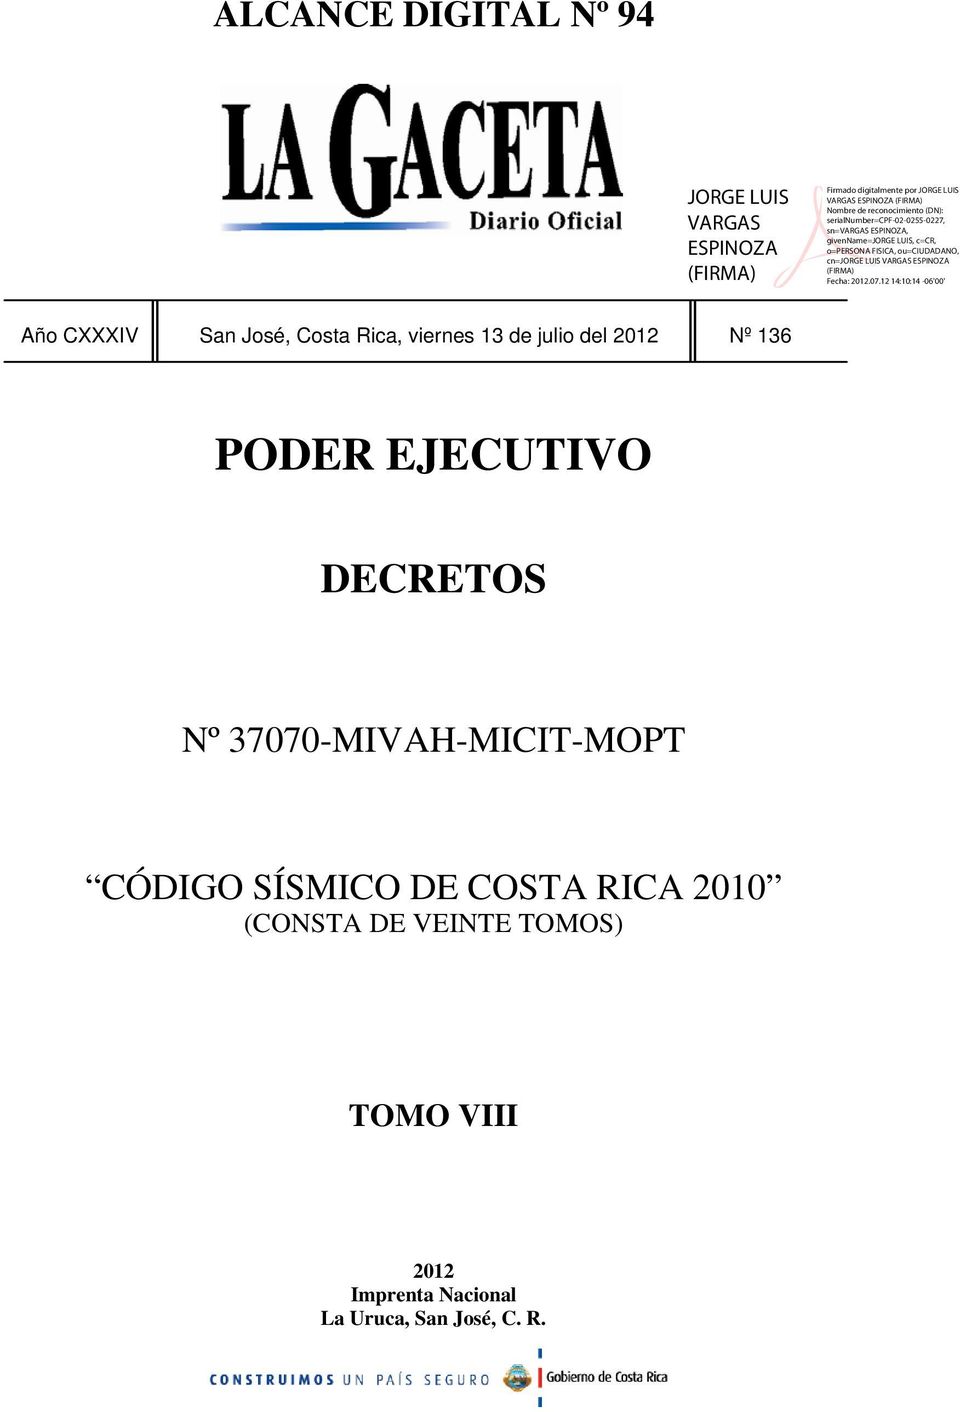 37070-MIVAH-MICIT-MOPT CÓDIGO SÍSMICO DE COSTA RICA 2010 (CONSTA